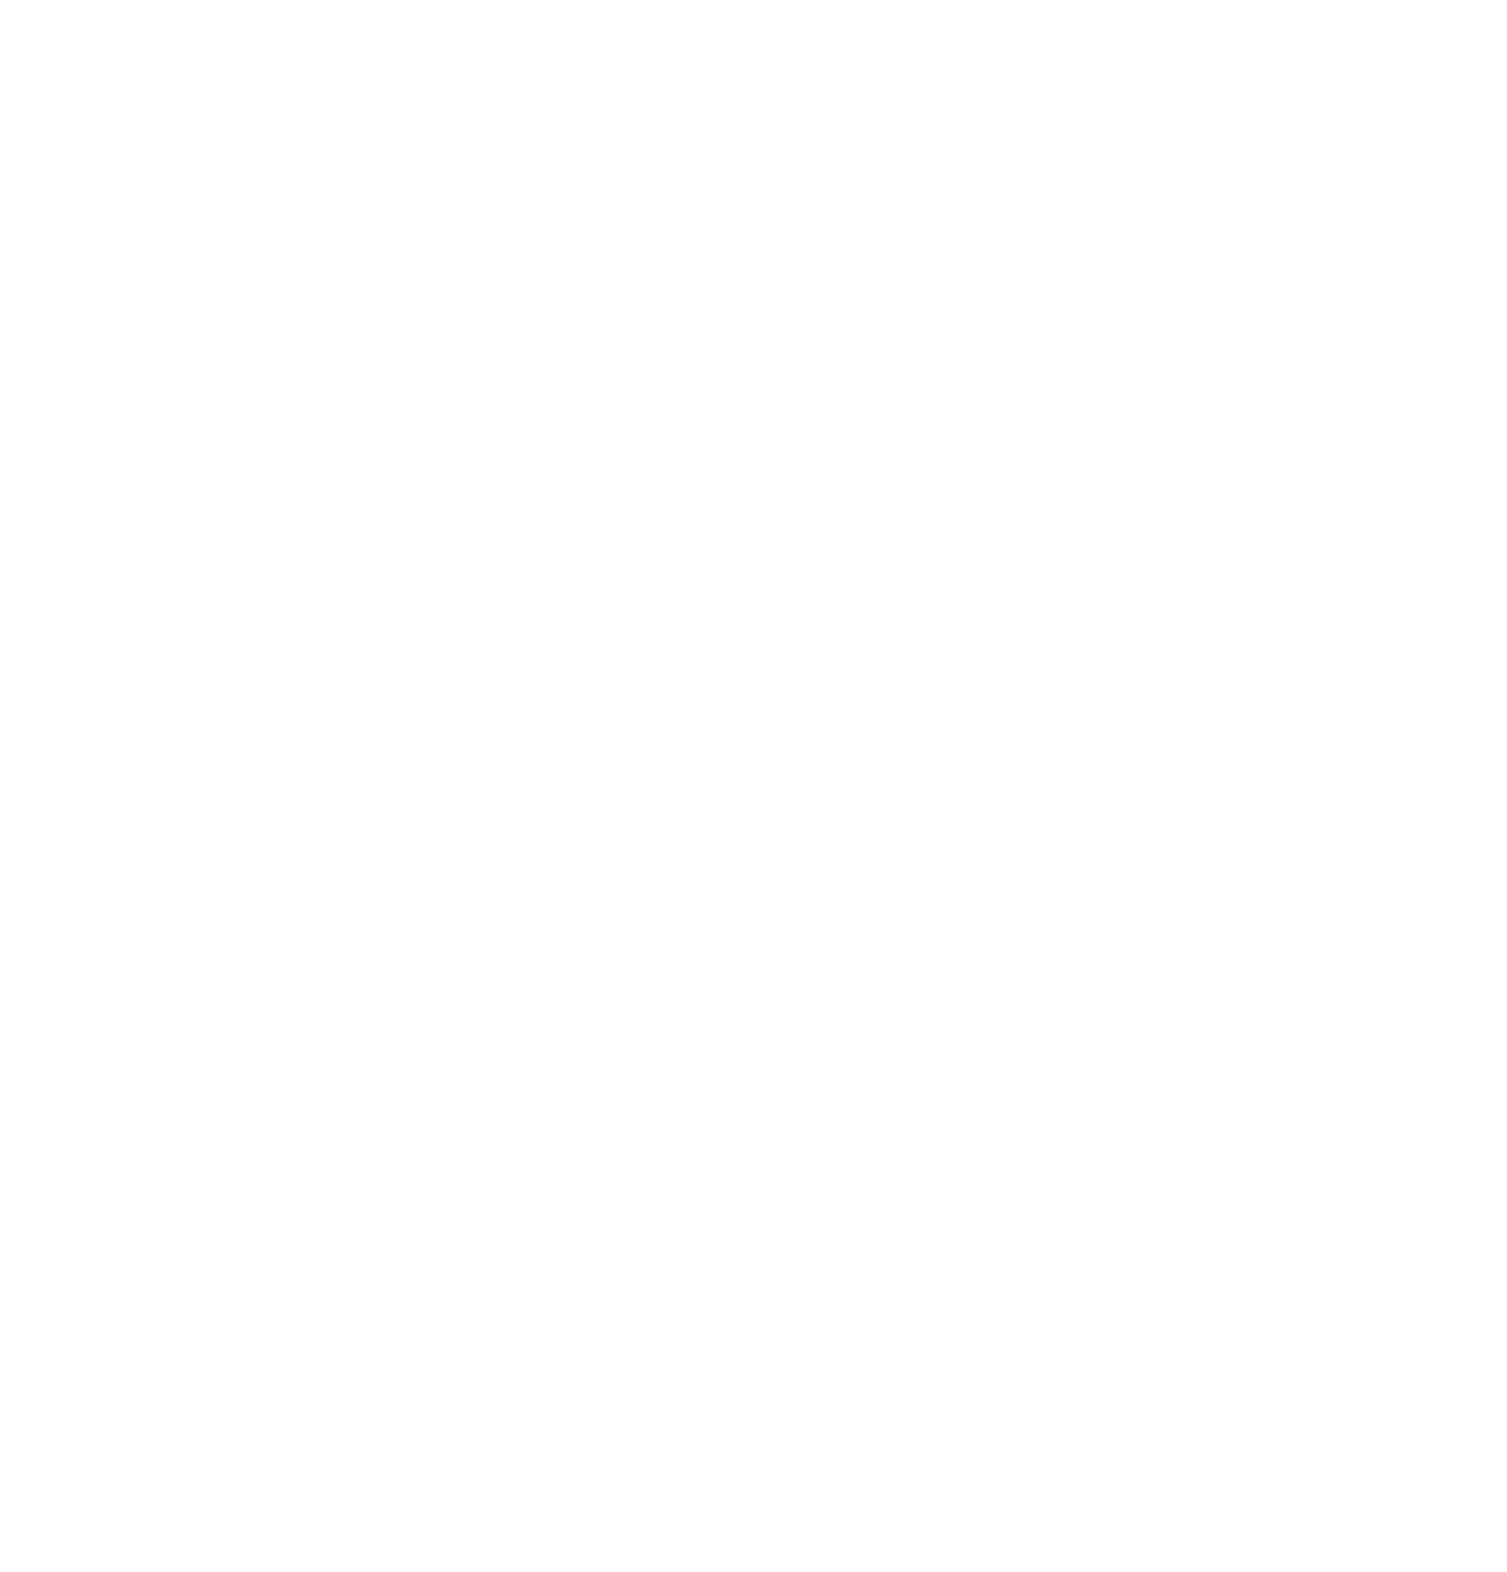 Bed Bath & Beyond logo for dark backgrounds (transparent PNG)